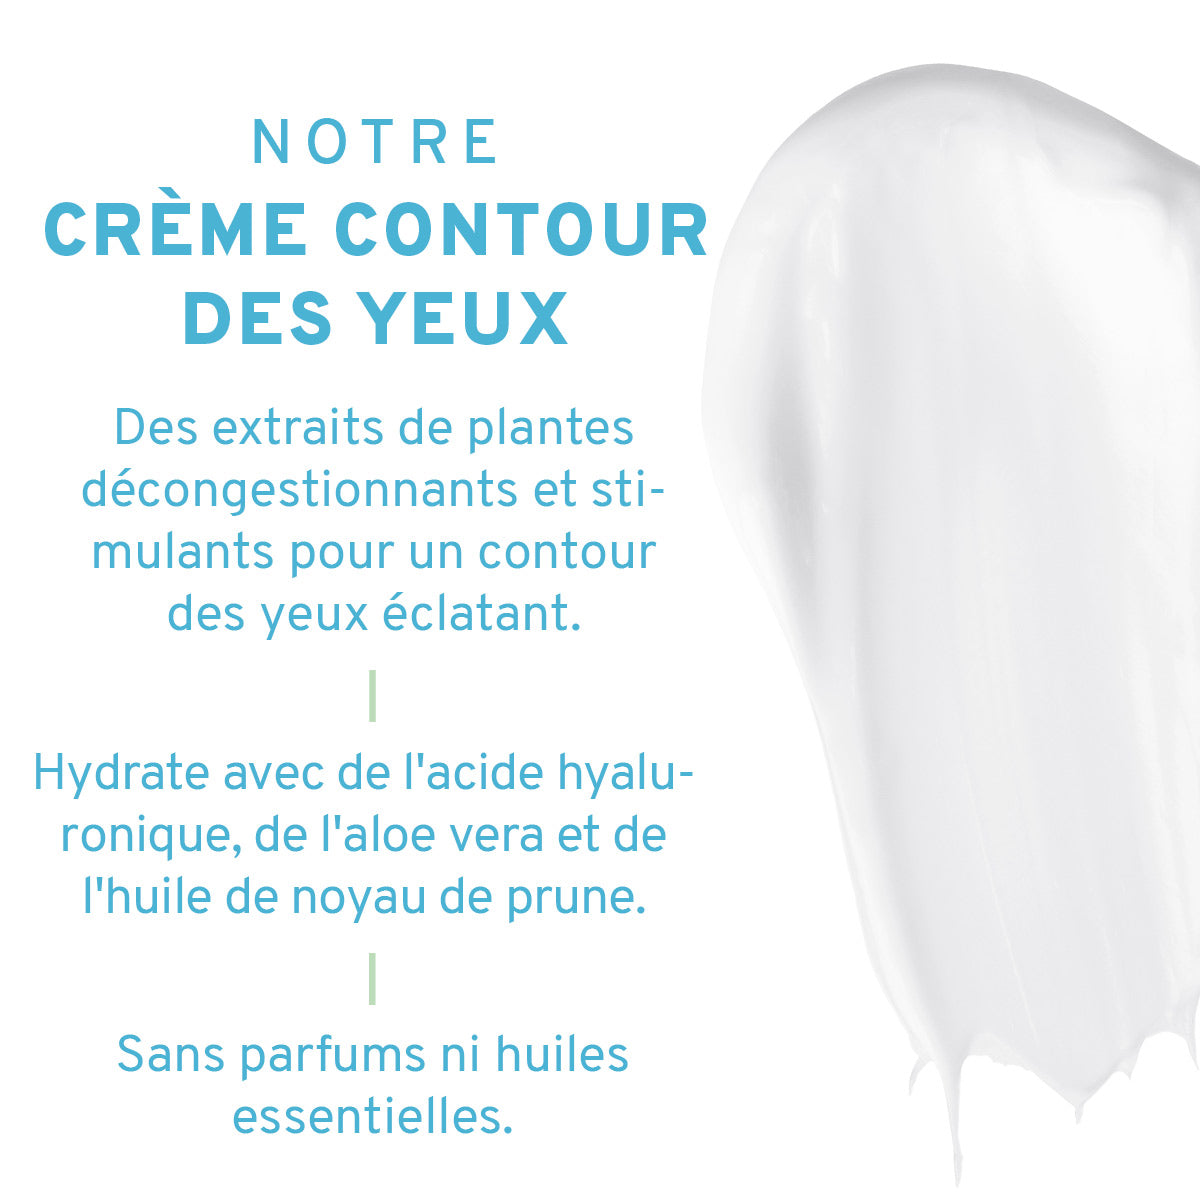 Crème Contour des Yeux : Aloe vera + acide hyaluronique